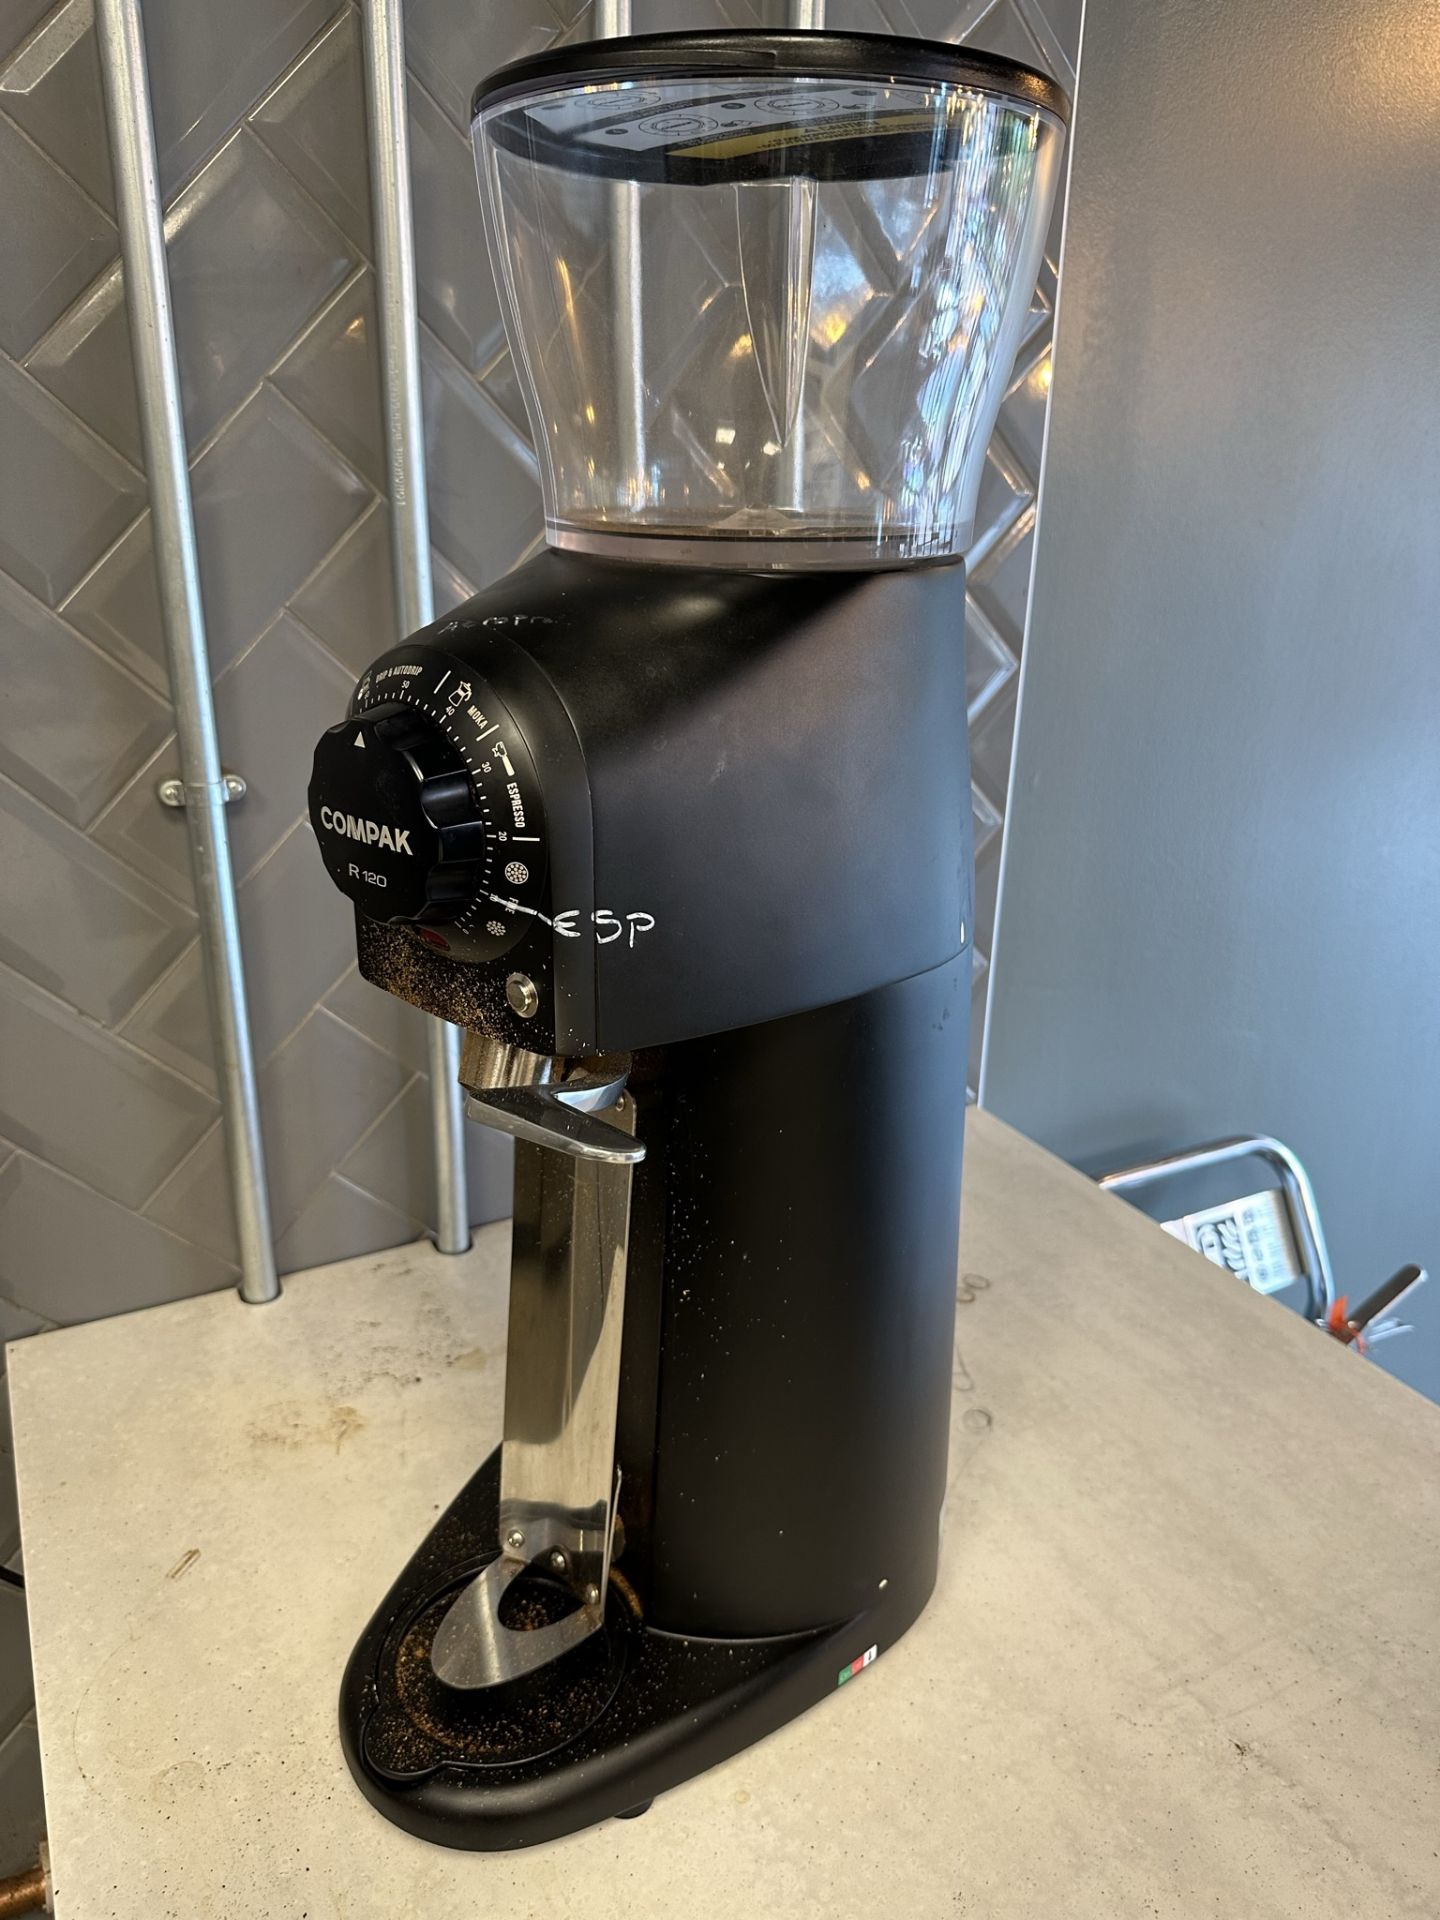 Compak R120 Industrial Coffee Grinder - Image 4 of 4